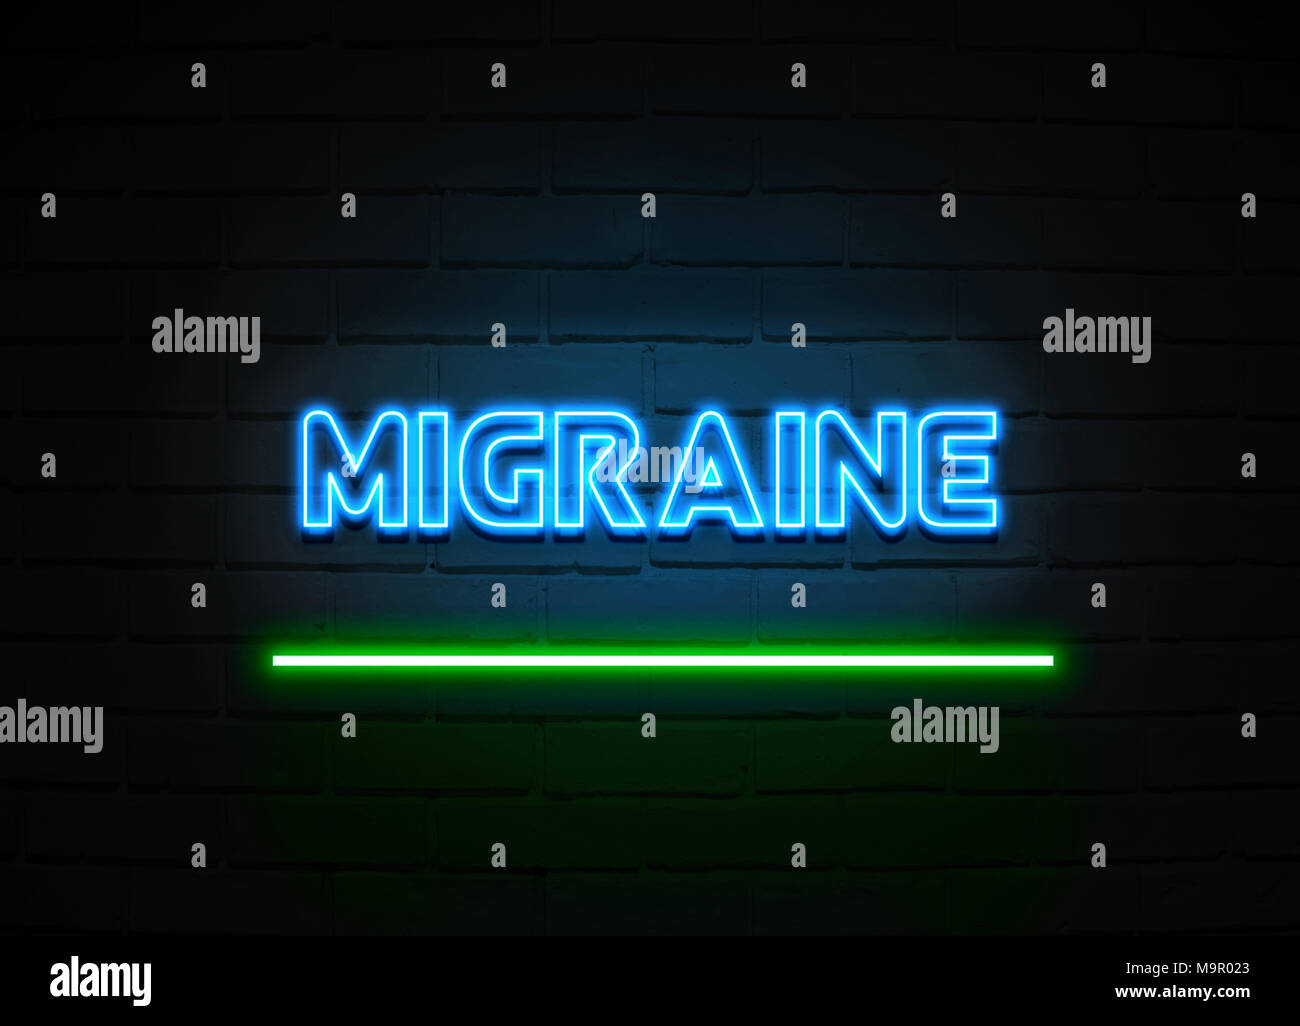 Migräne Leuchtreklame - glühende Leuchtreklame auf brickwall Wand - 3D-Royalty Free Stock Illustration dargestellt. Stockfoto